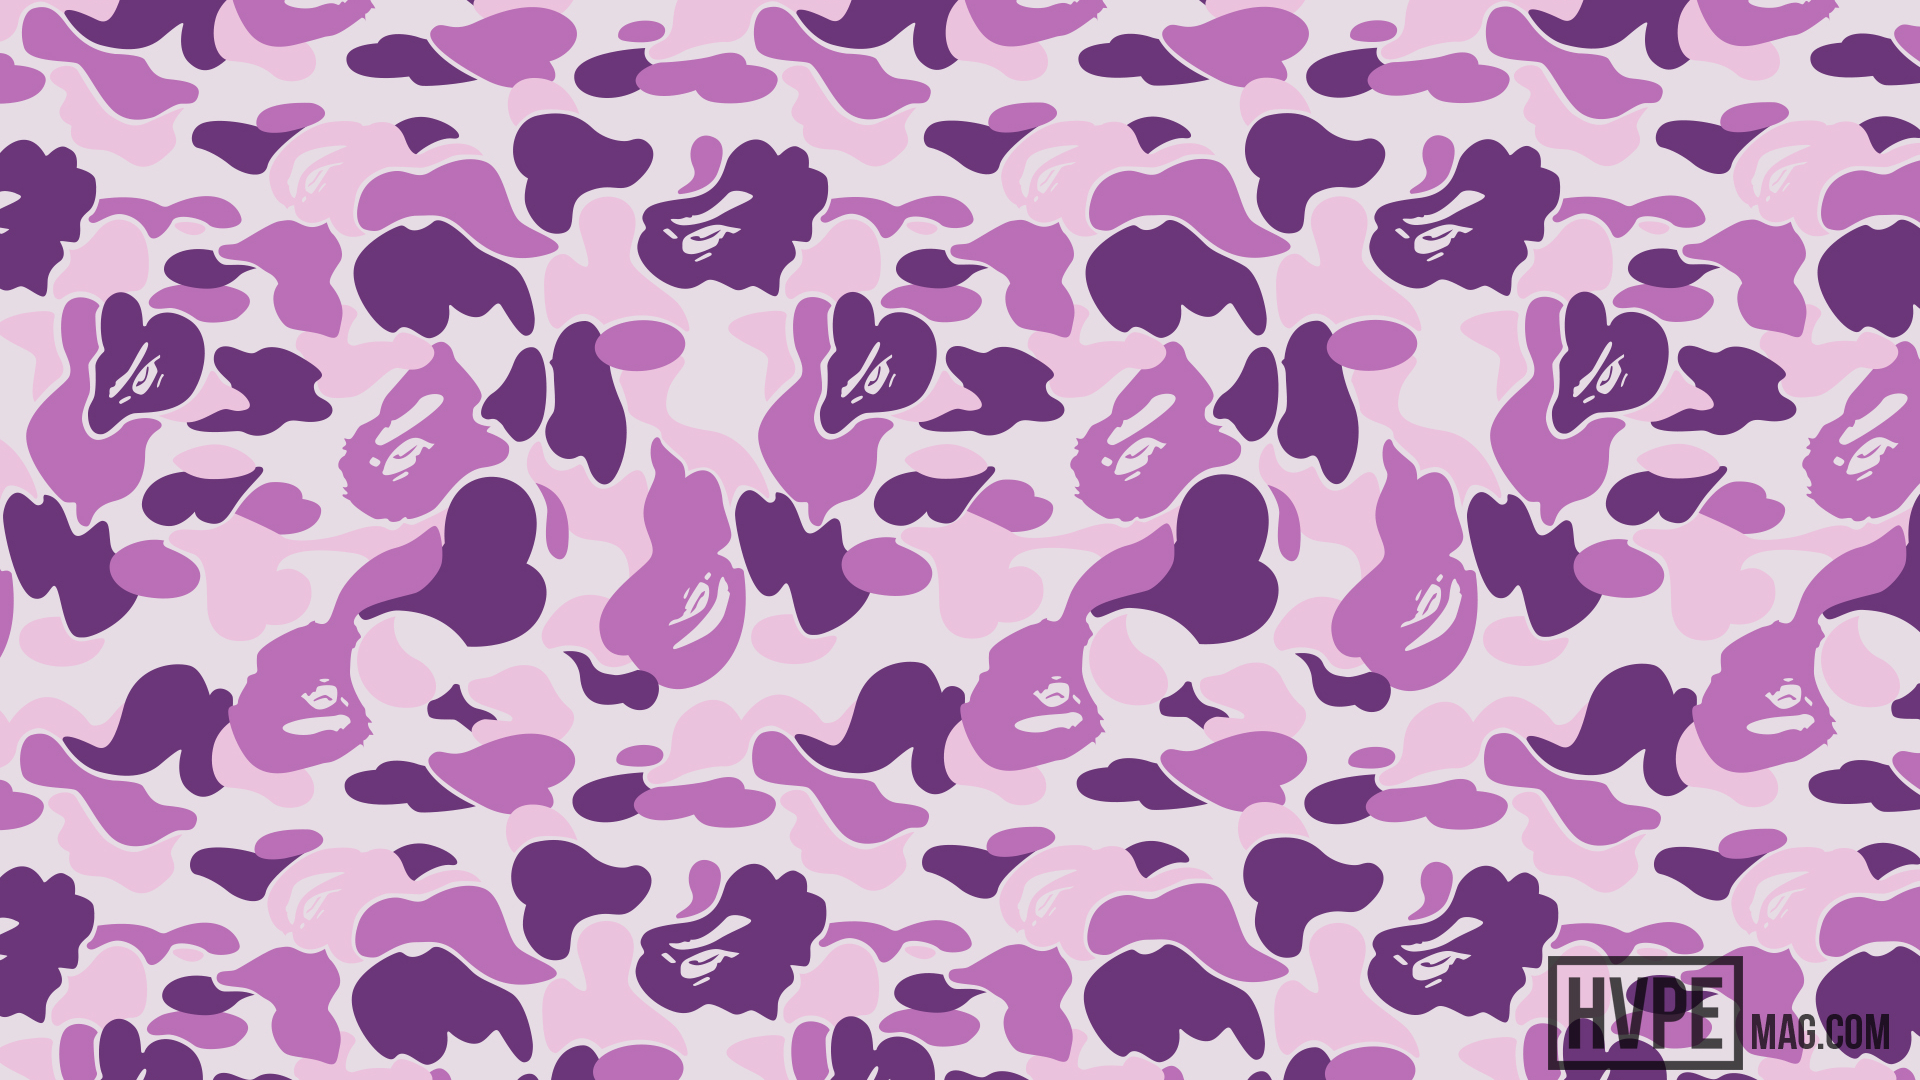 Free download Bape Desktop Wallpaper Fogwlprs Arts Res Background Bape Purple [1920x1200] for your Desktop, Mobile & Tablet. Explore Purple BAPE Wallpaper. Purple Bape Camo Wallpaper, Bape Shark Wallpaper